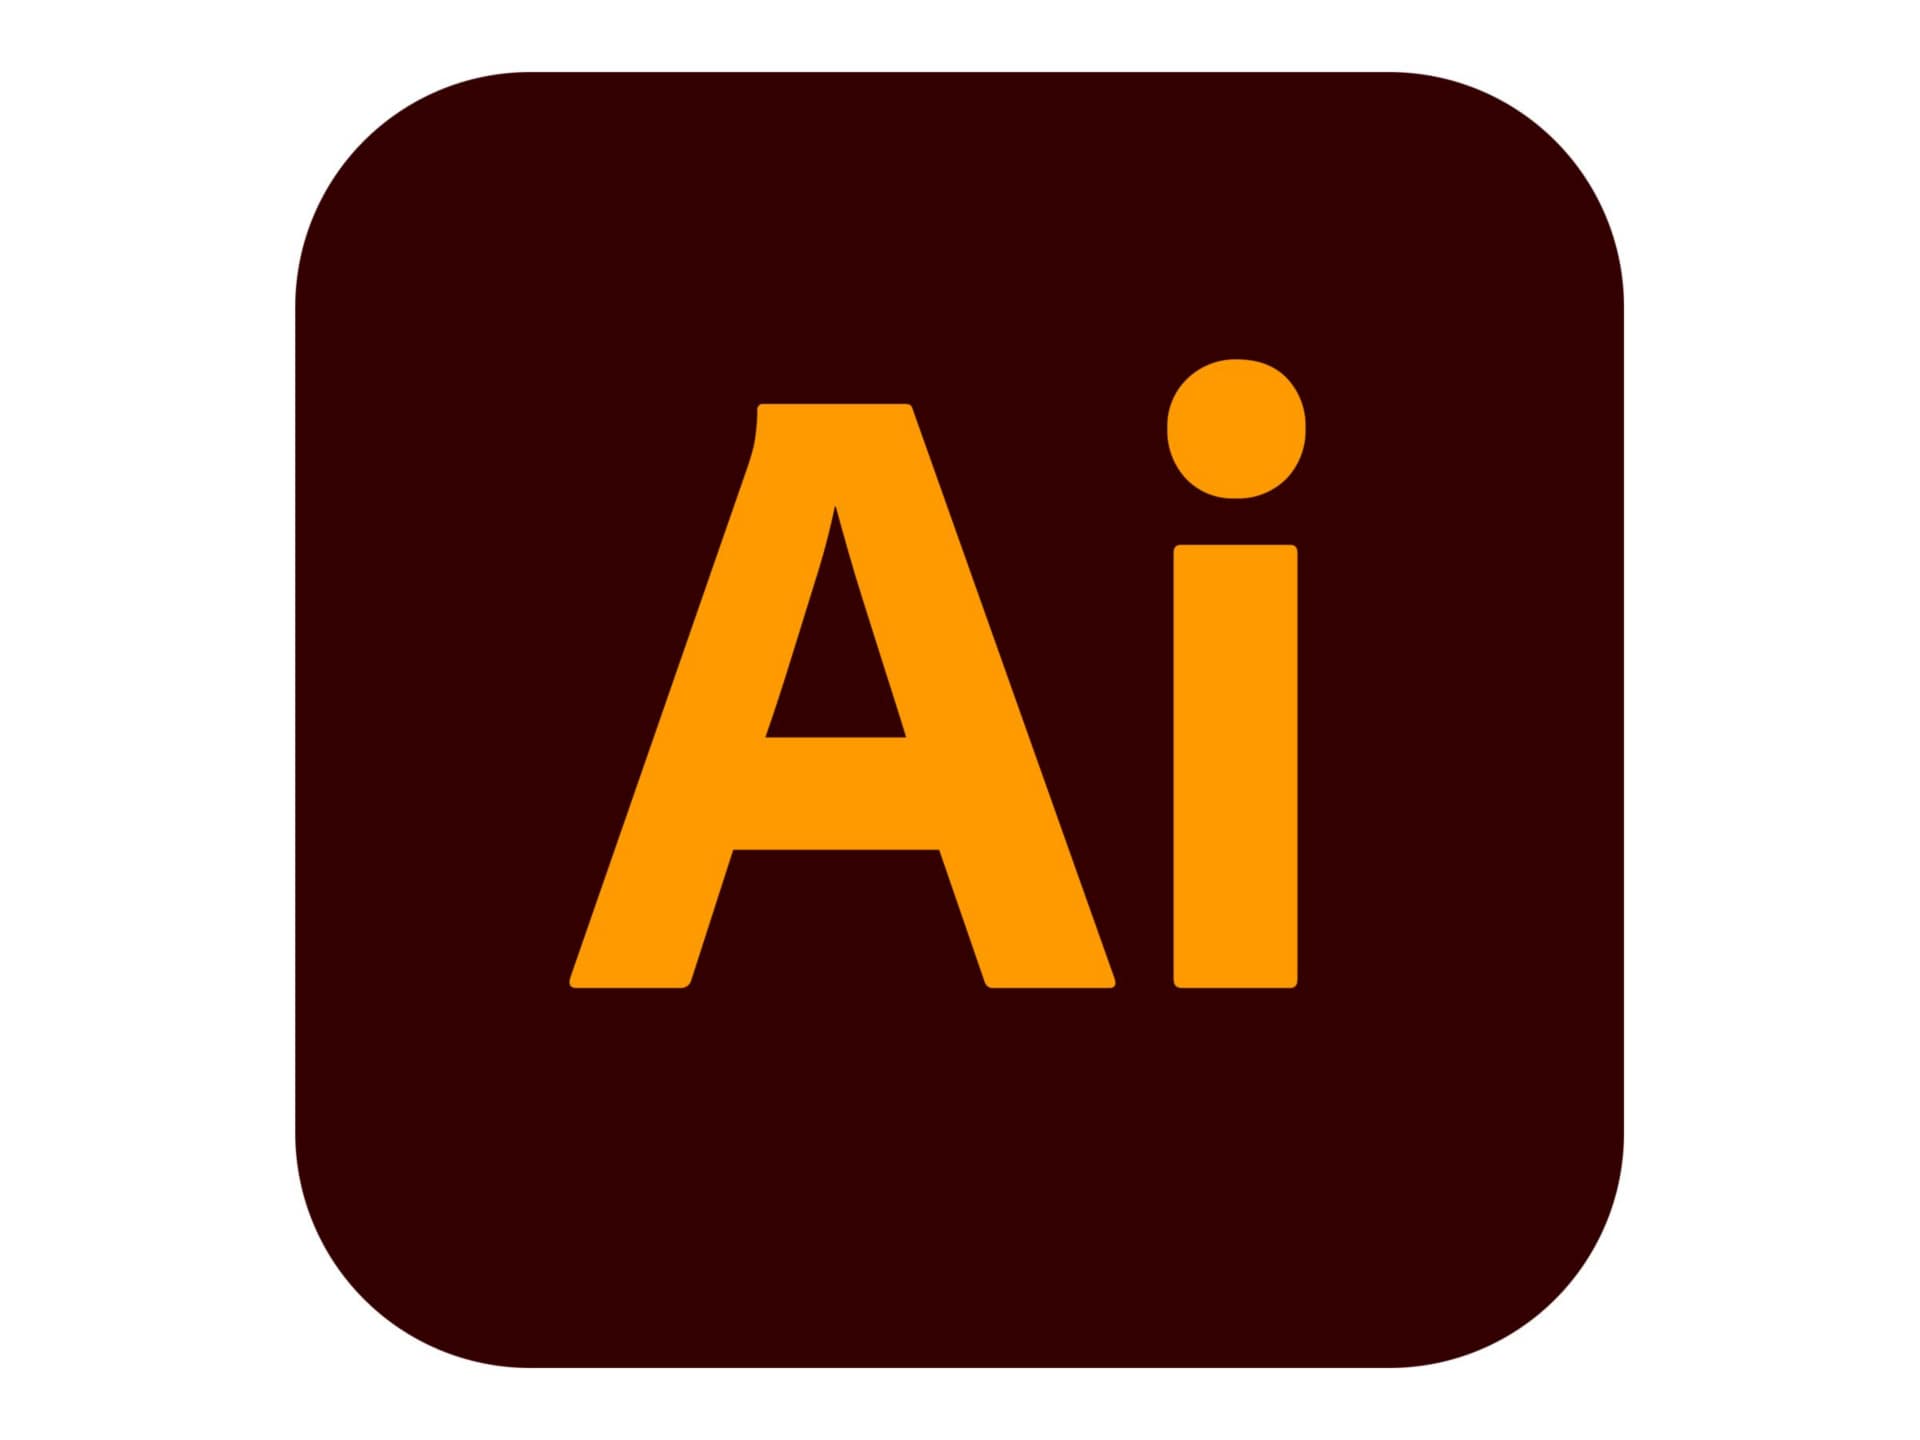 Adobe Illustrator CC for Enterprise - Subscription New (3 months) - 1 named user